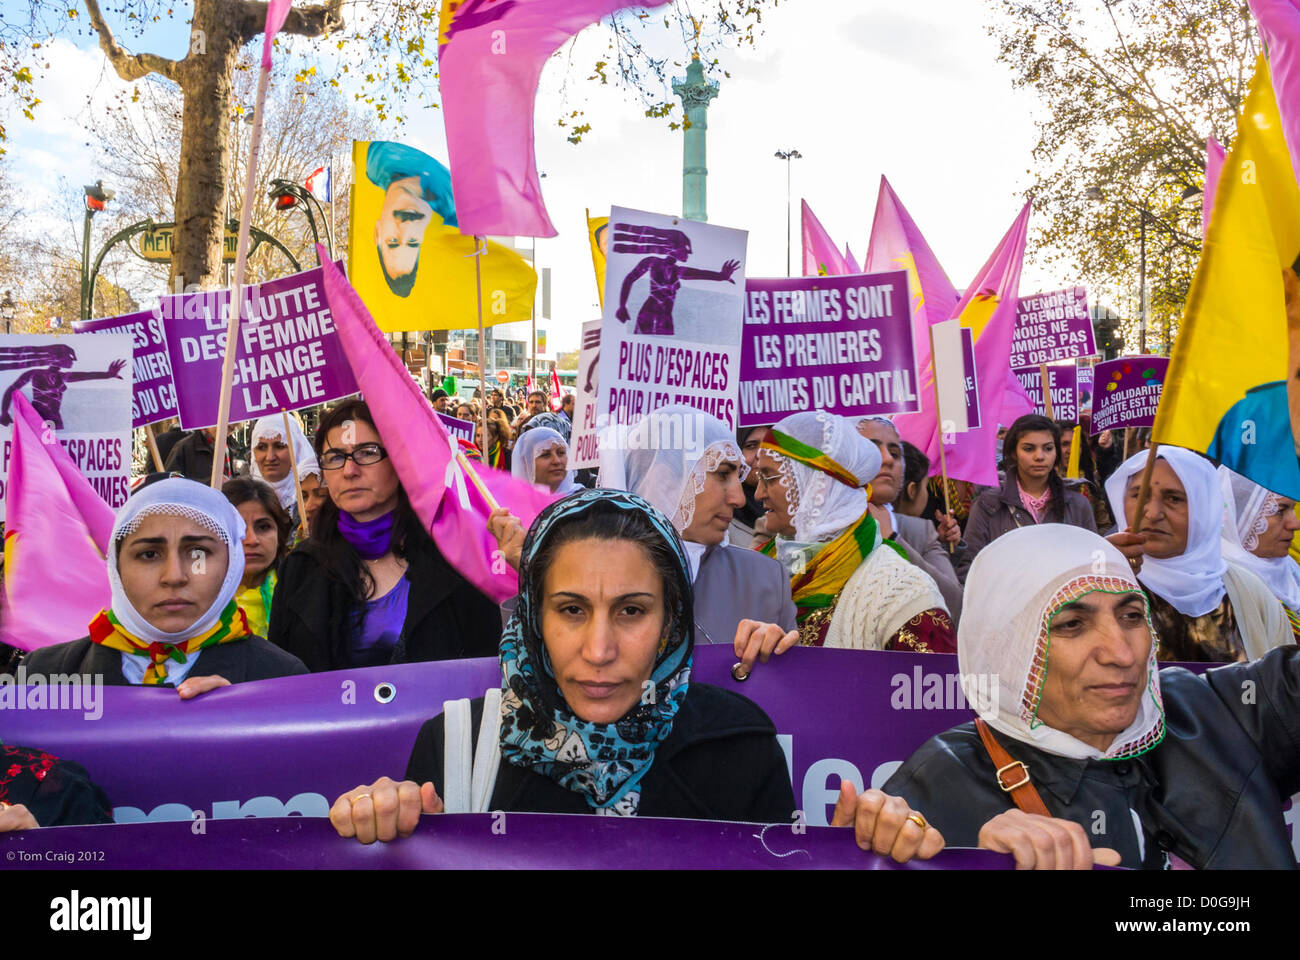 Parigi, Francia, dimostrazione diversi gruppi femministi hanno tenuto una marcia contro la violenza verso le donne, giornata internazionale dei diritti delle donne, gruppo delle donne curde, donne di uguaglianza che protestano per i diritti delle donne, donne curde, francia musulmana, donna che indossa un hijab francia, gruppo di donne anziane gravi, segni di empowerment femminile Foto Stock